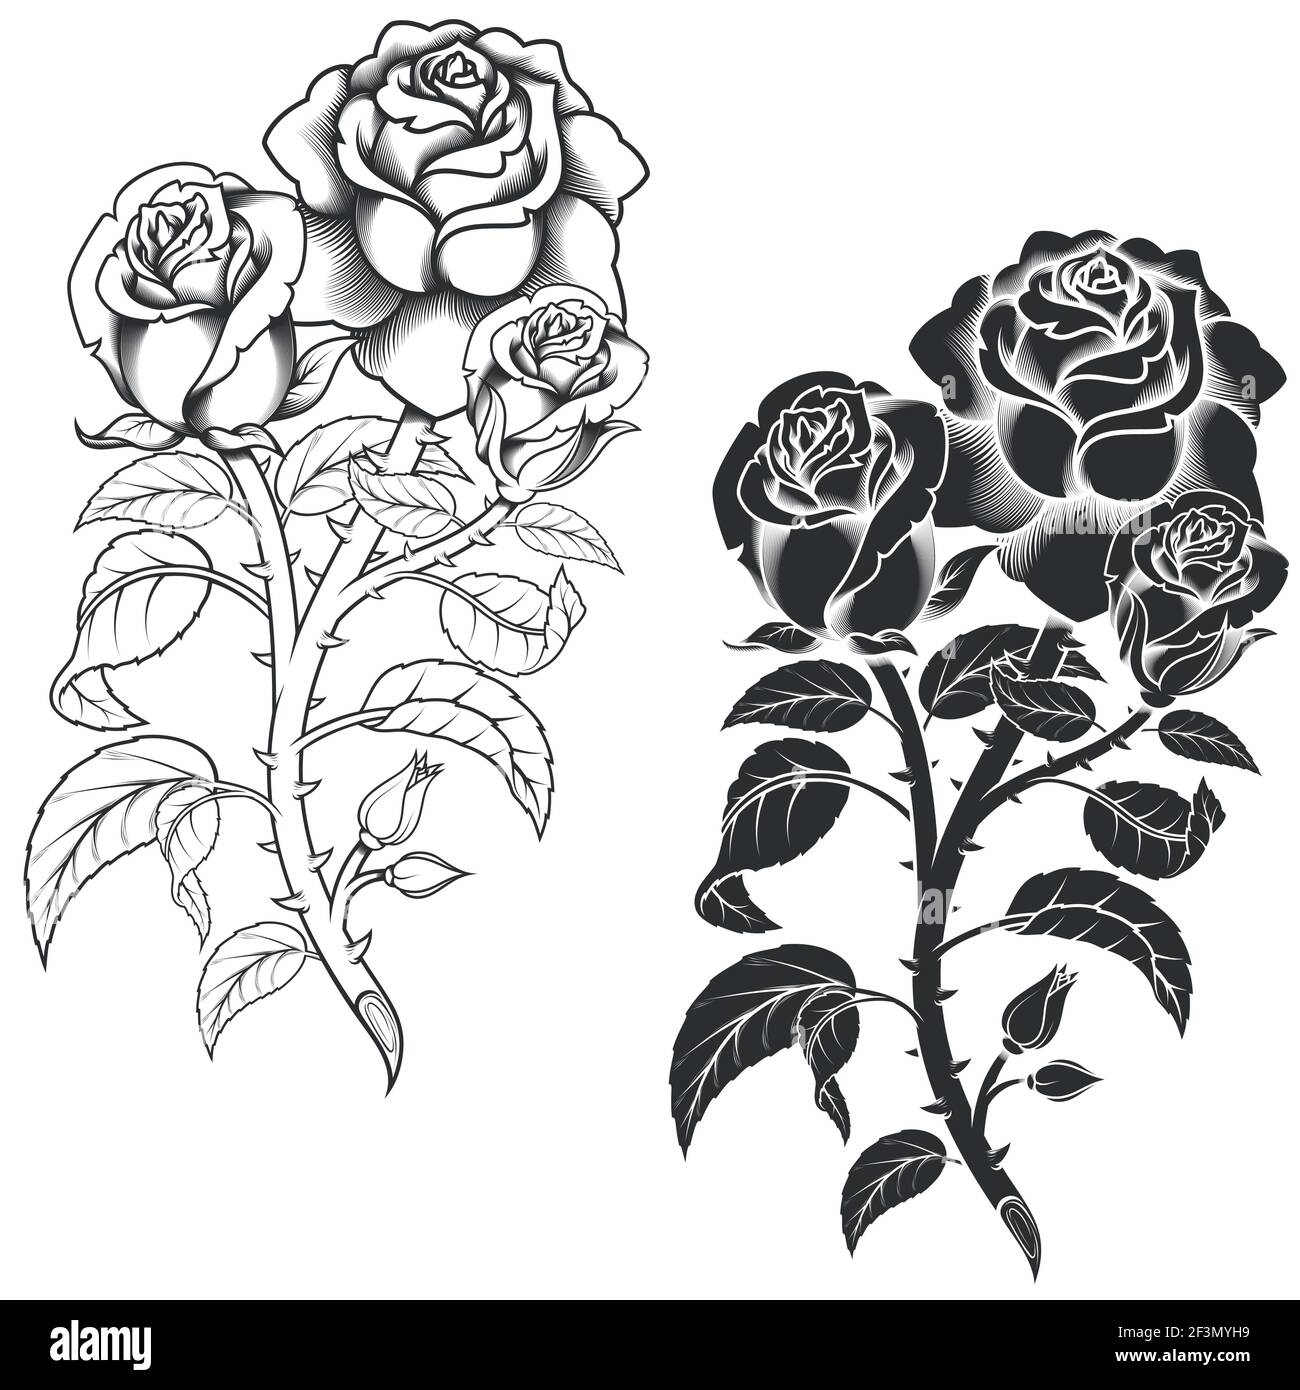 Dessin vectoriel d'un bouquet de fleurs, en noir et blanc, le tout sur fond blanc Illustration de Vecteur